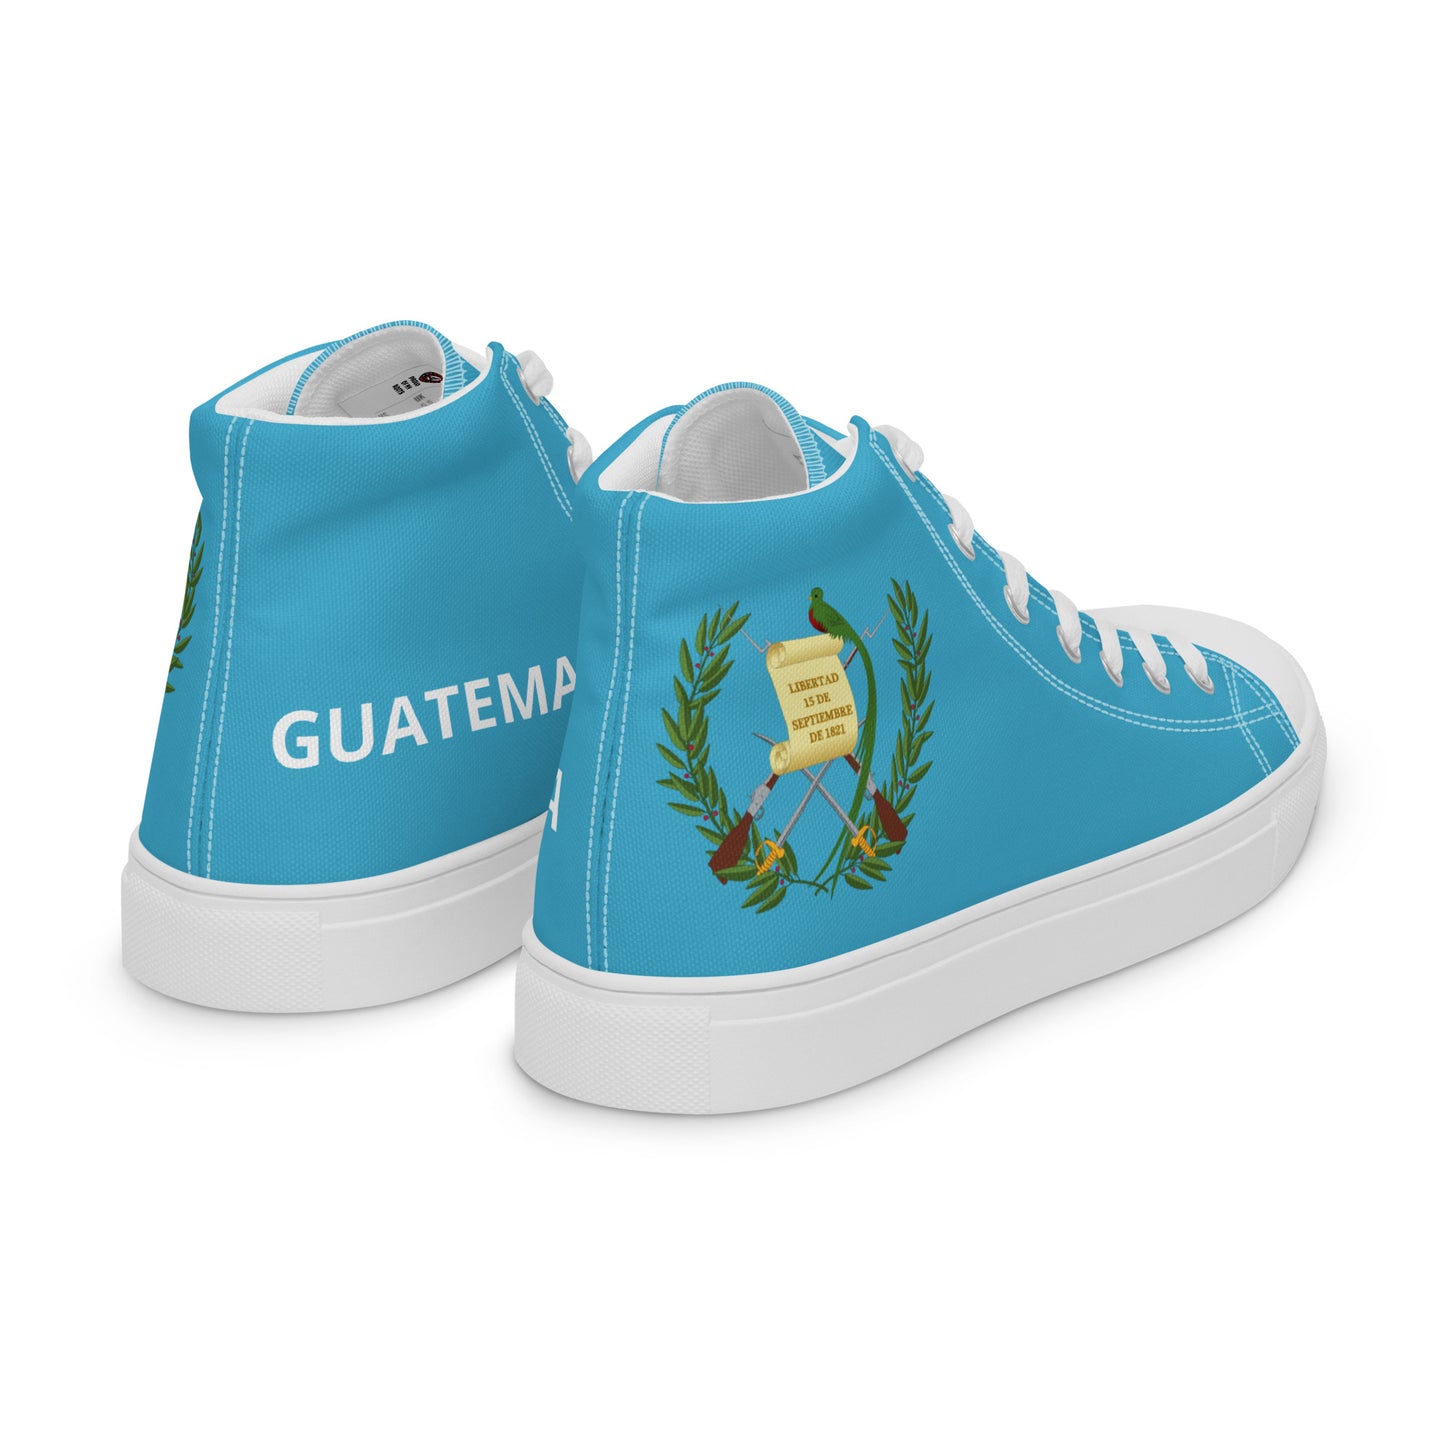 Guatemala - Women - Sky - High top shoes